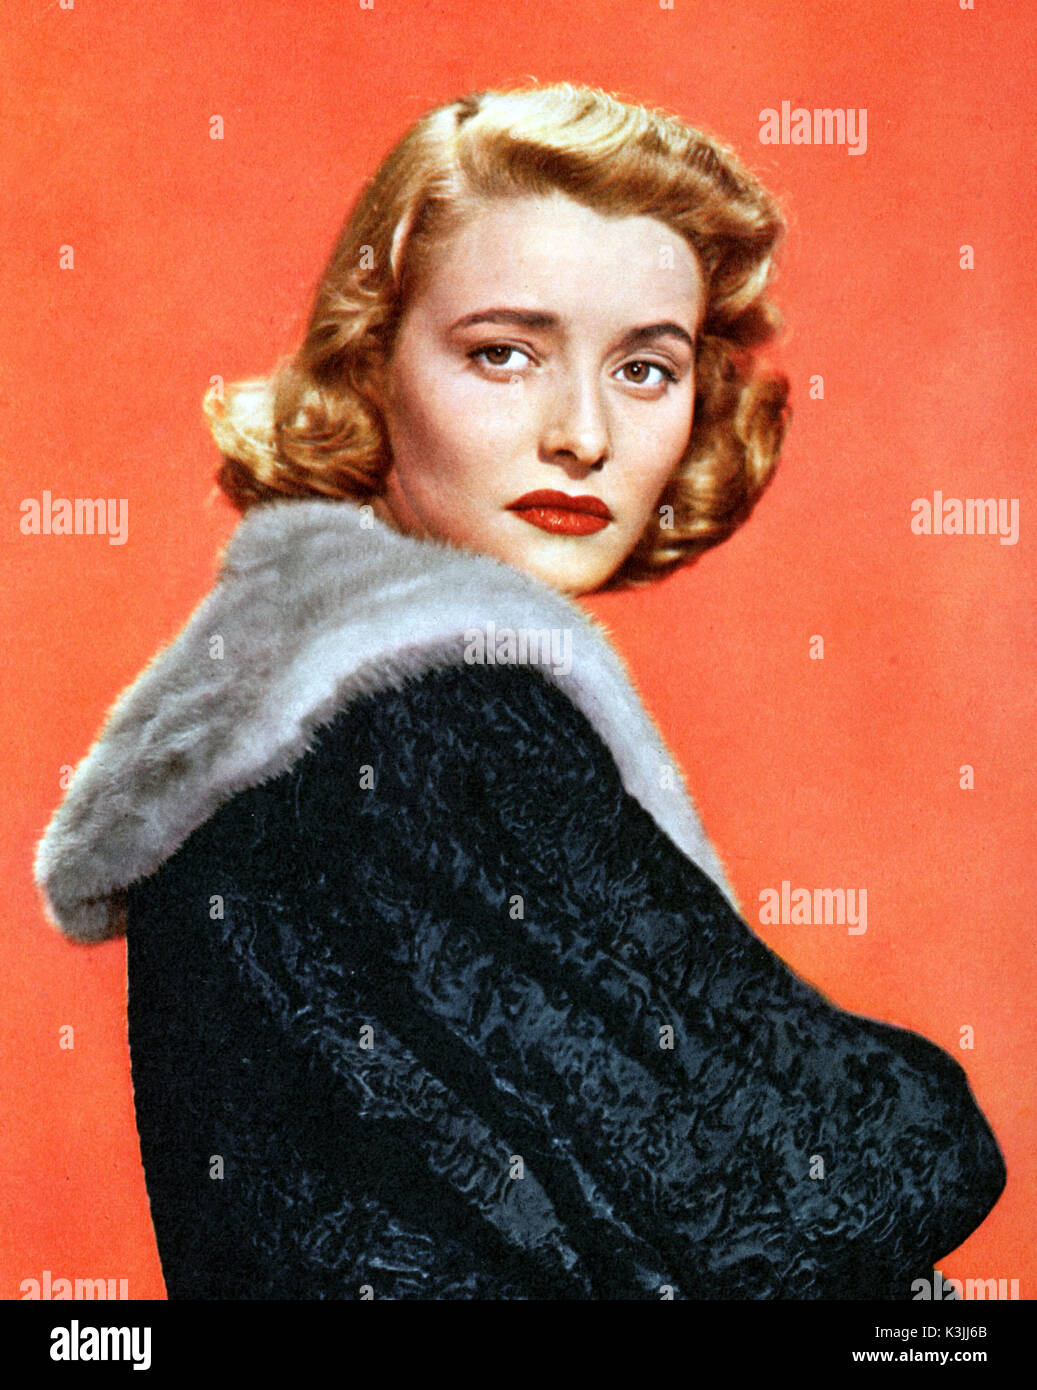 PATRICIA NEAL amerikanischer Schauspieler. Foto c 1950 Stockfoto